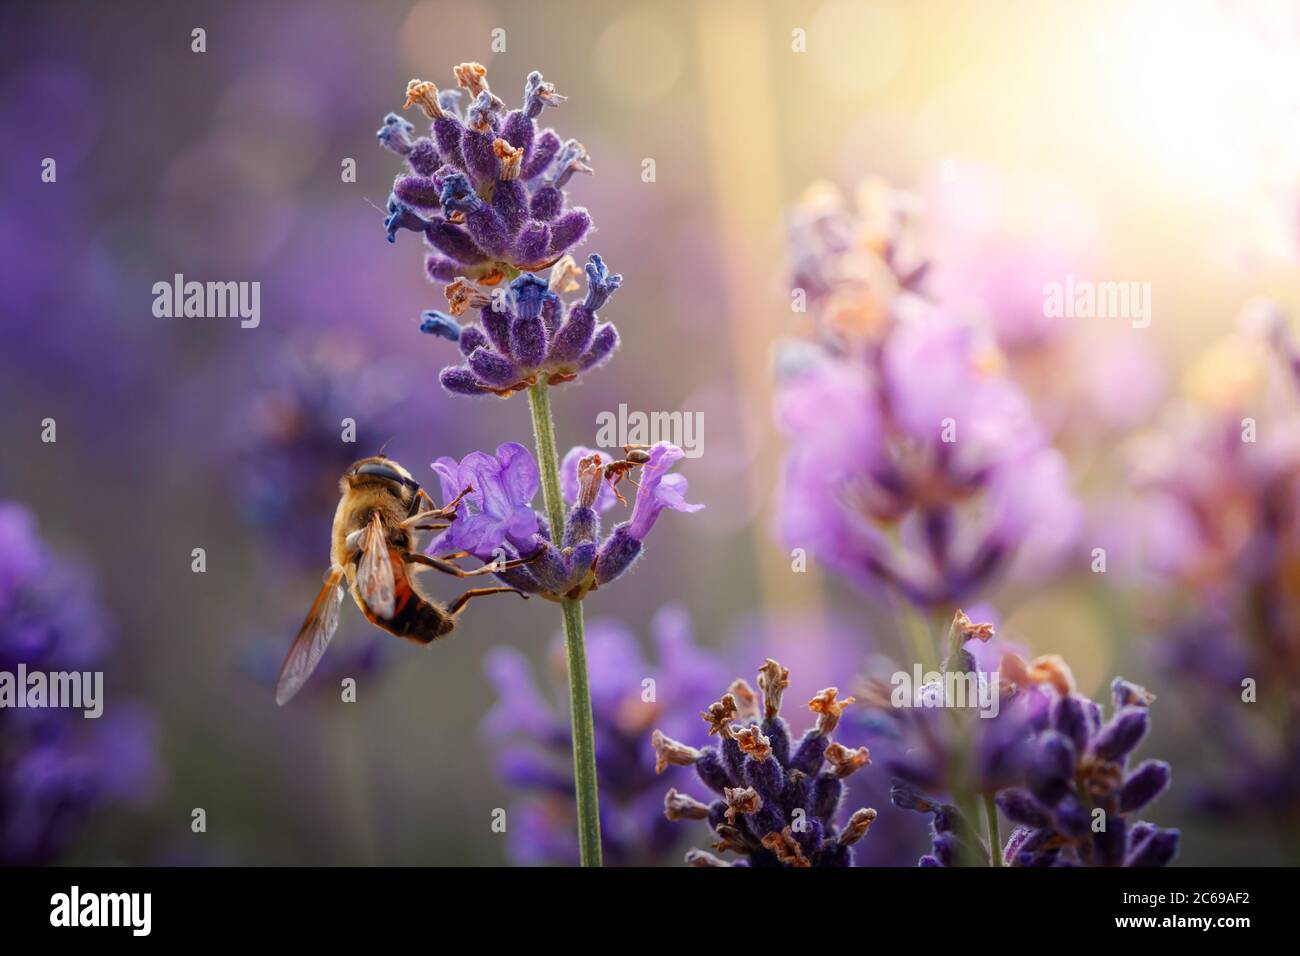 Jour de travail dans la nature. Les abeilles diligentes récoltent le pollen de la fleur de lavande pourpre pour faire du miel en été. Macro-image rapprochée Banque D'Images